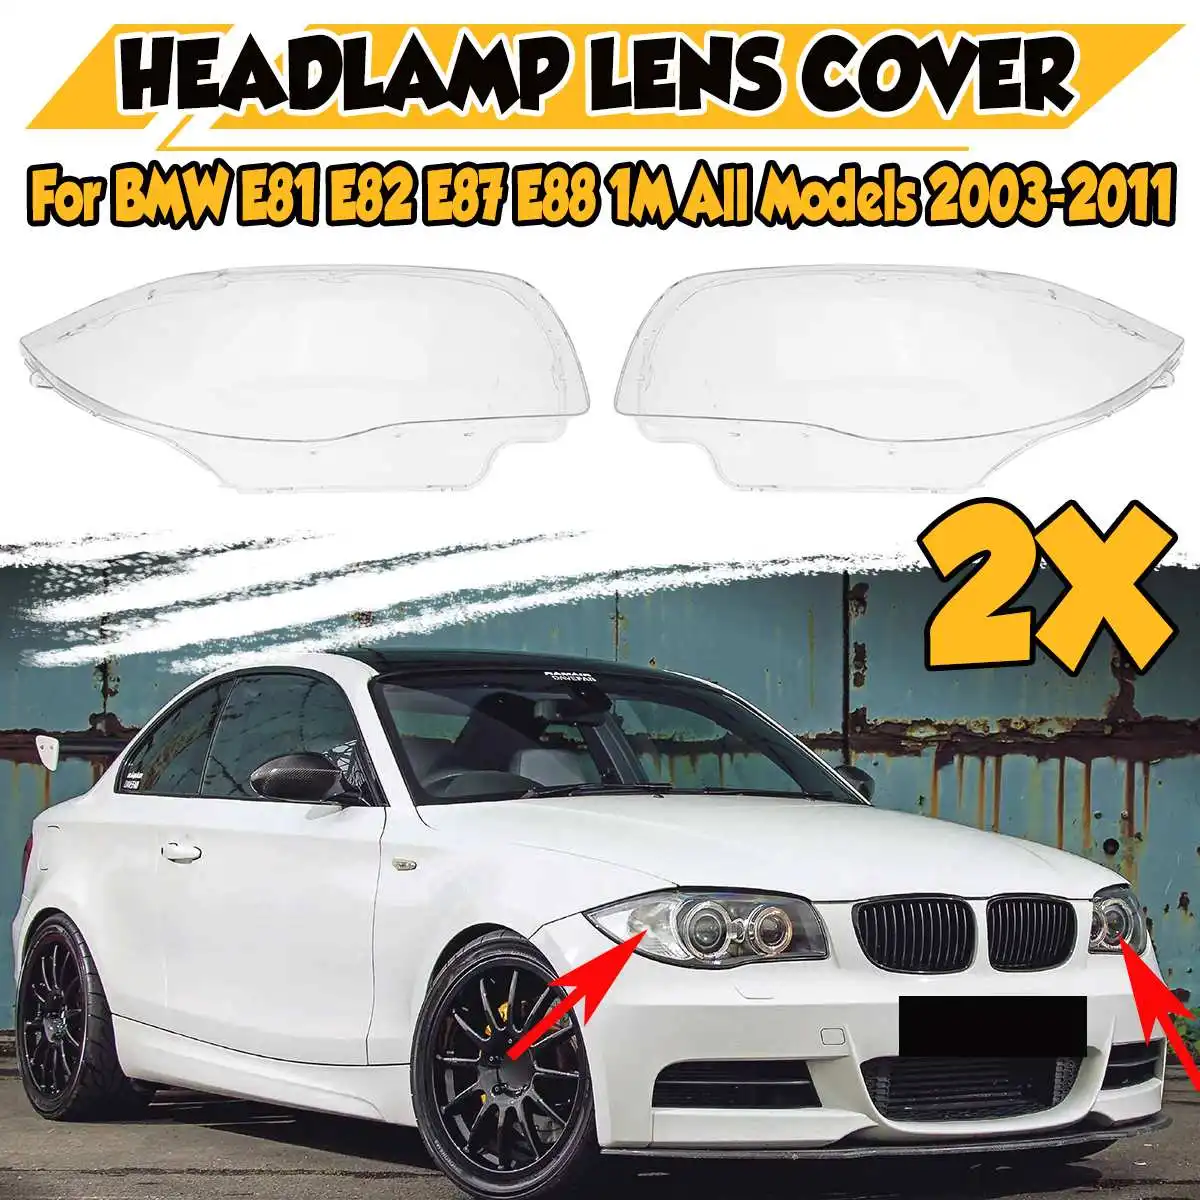 

2PCS E81 E82 Car Front Headlight Headlamp Lens Cover Shell Case For BMW E81 E82 E87 E88 1M 2003-2011 63116924668 63116924667